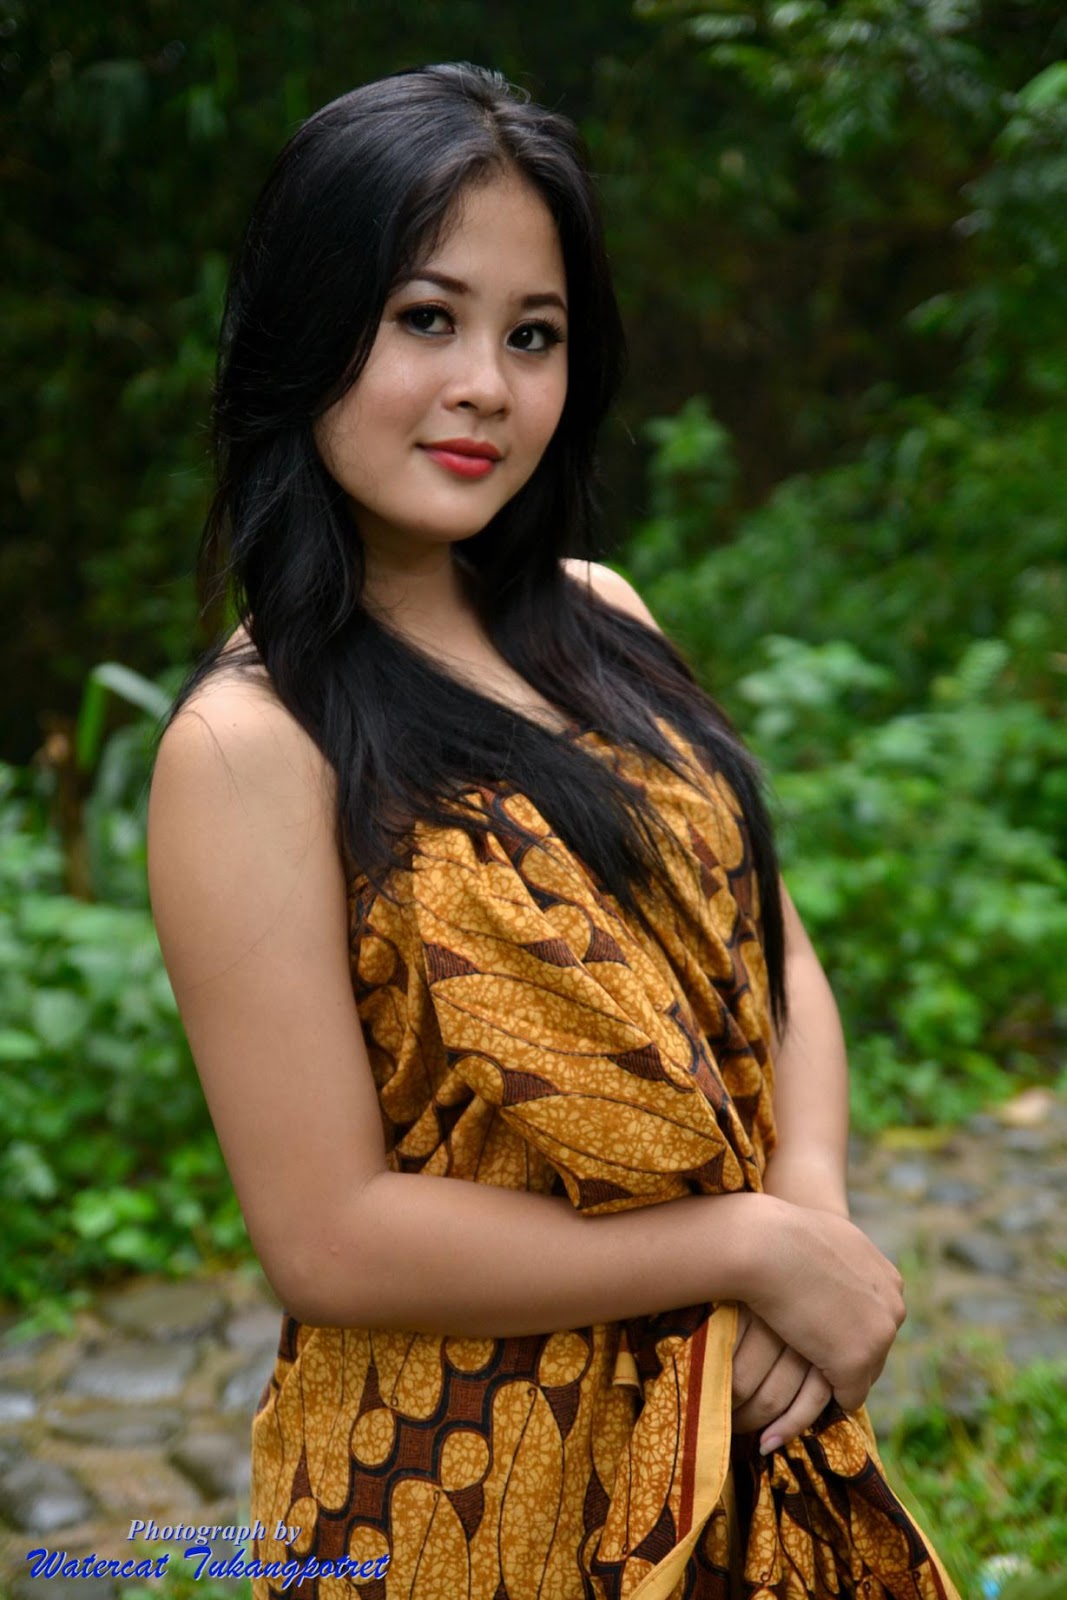 Gadis telanjang. Desa актриса. Лаос девушки. Индонезийки девушки. Юные красивые девушки Индонезии.